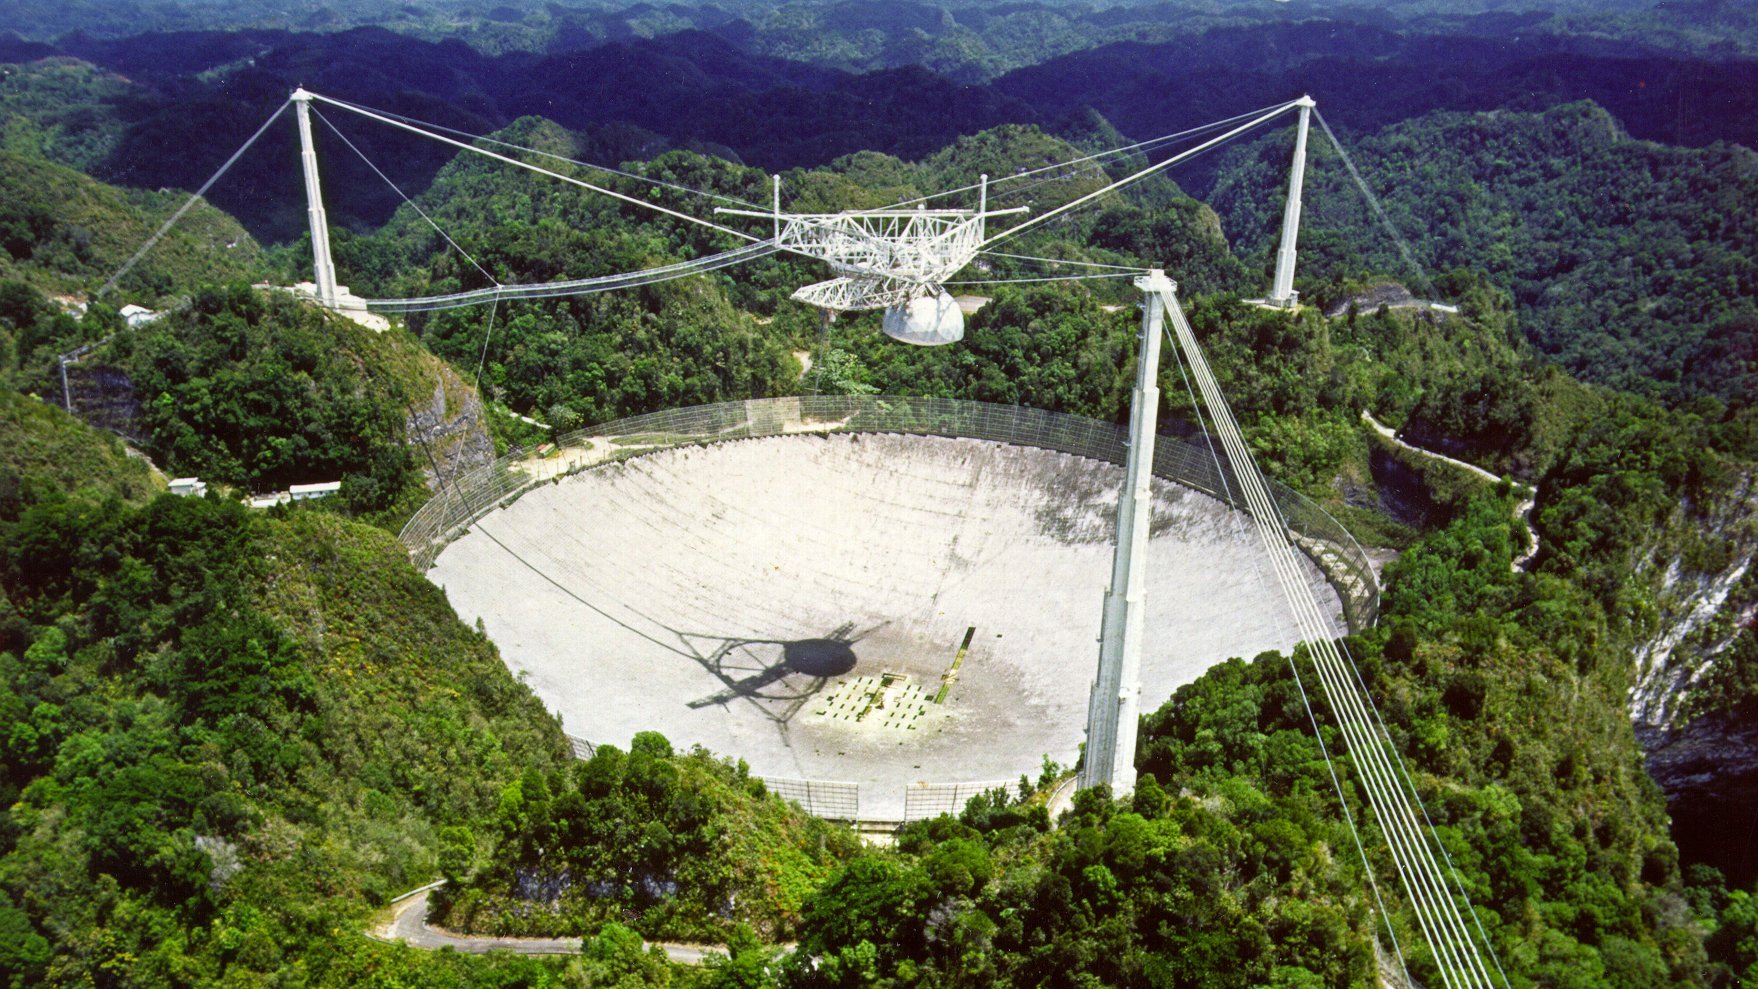 The Arecibo-Telescope in Puerto Rico